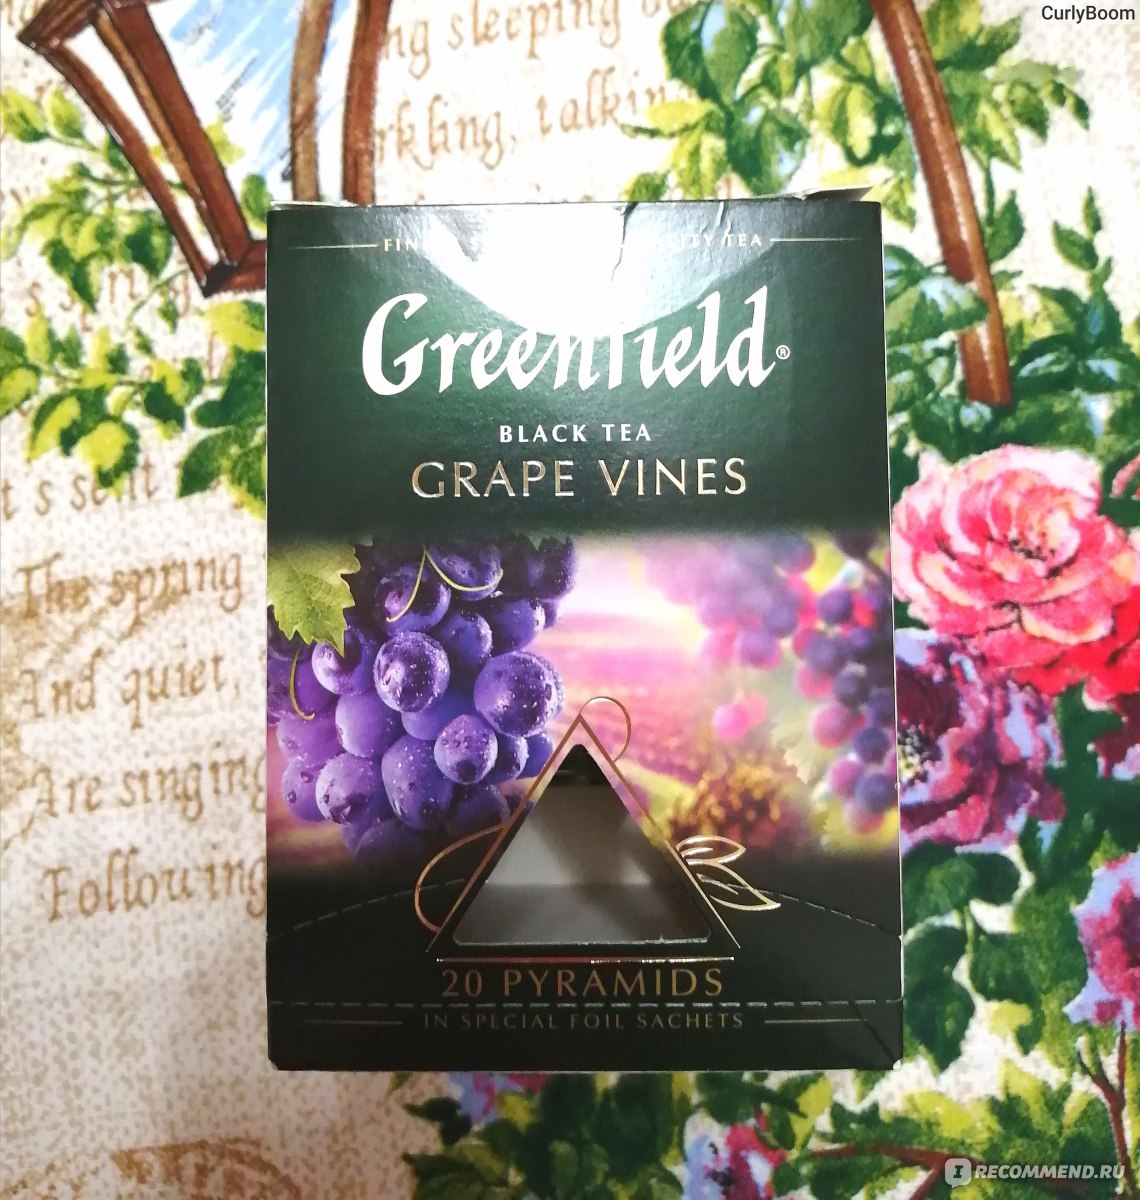 Гринфилд grape Vines